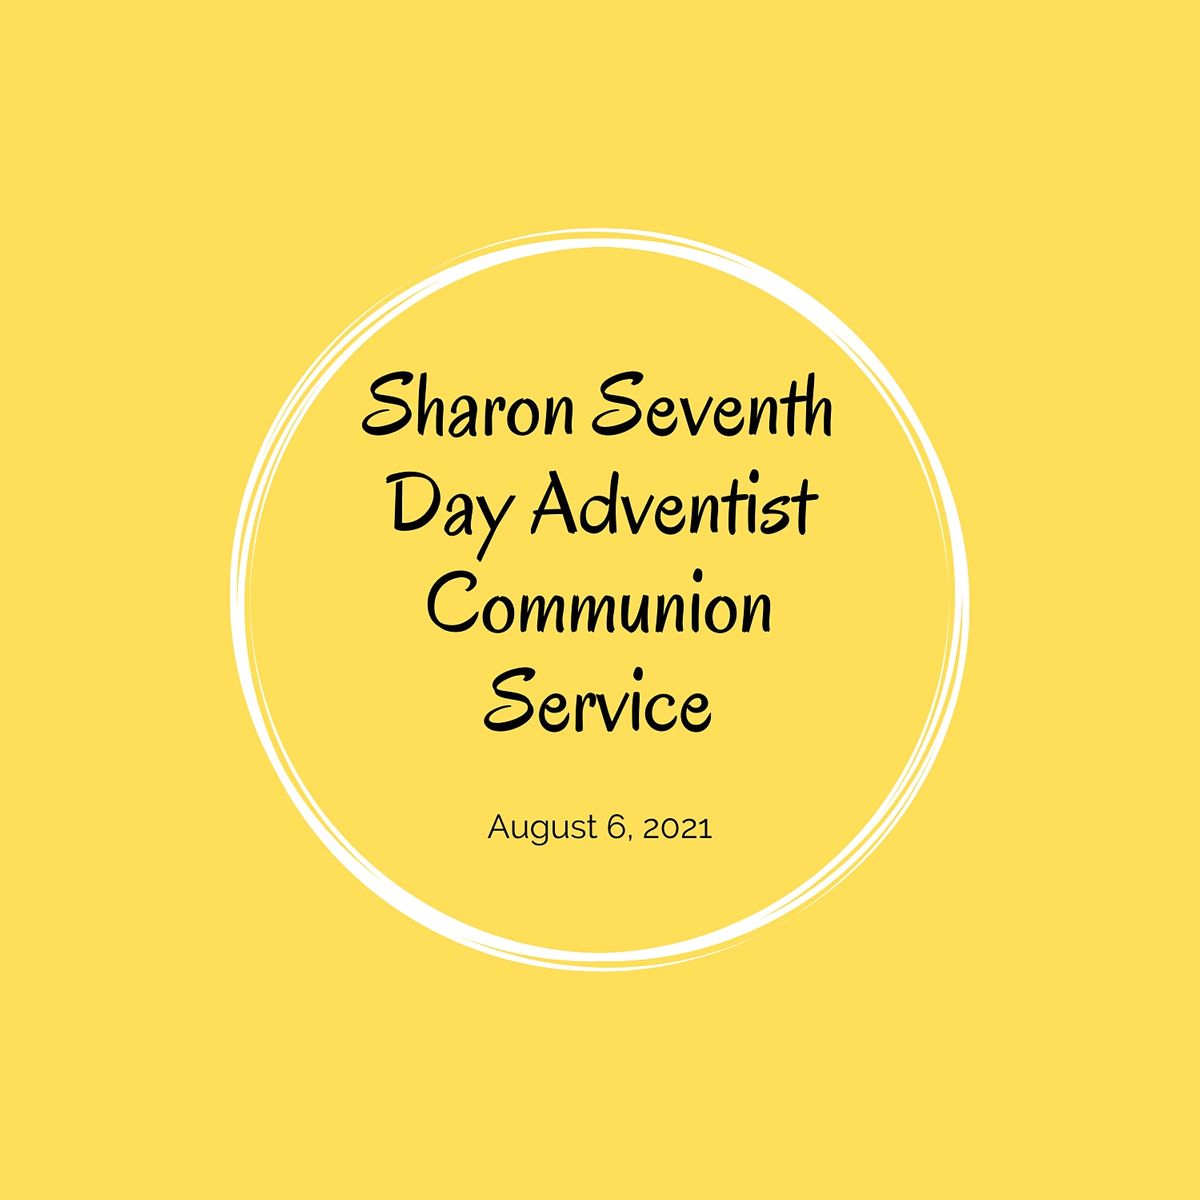 August 6, 2021 Communion Service